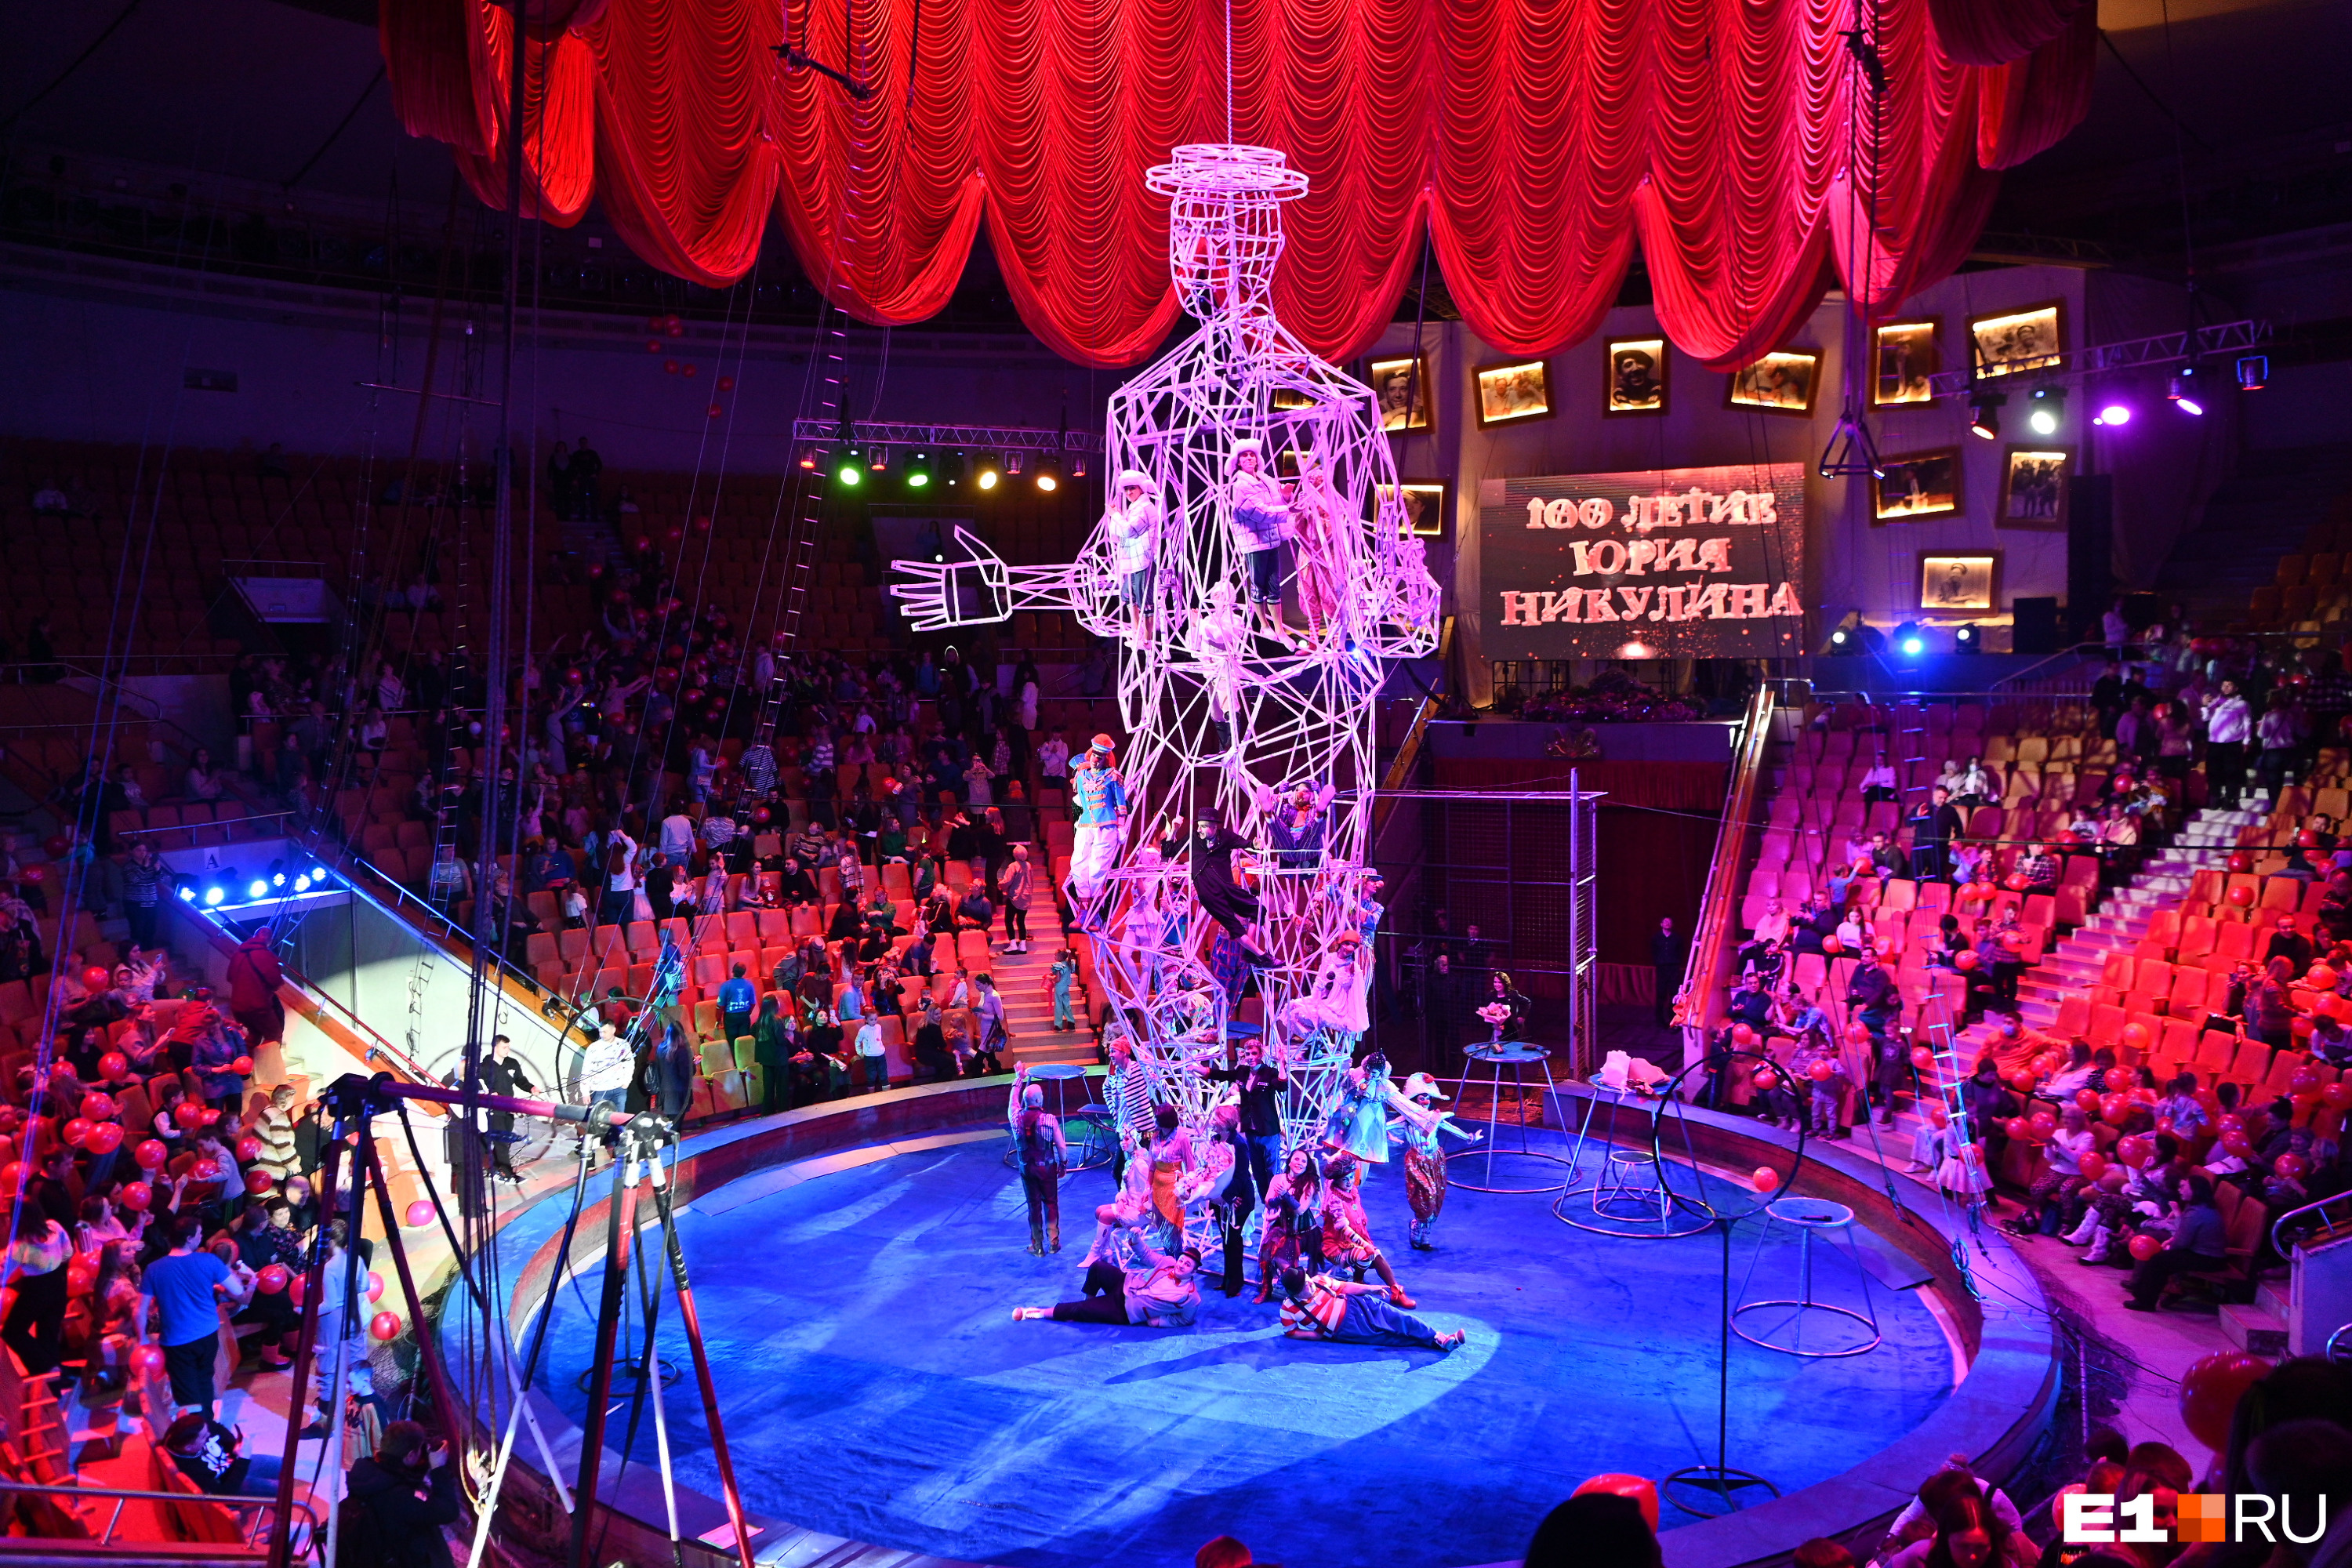 Екатеринбургский цирк расположение мест в зале